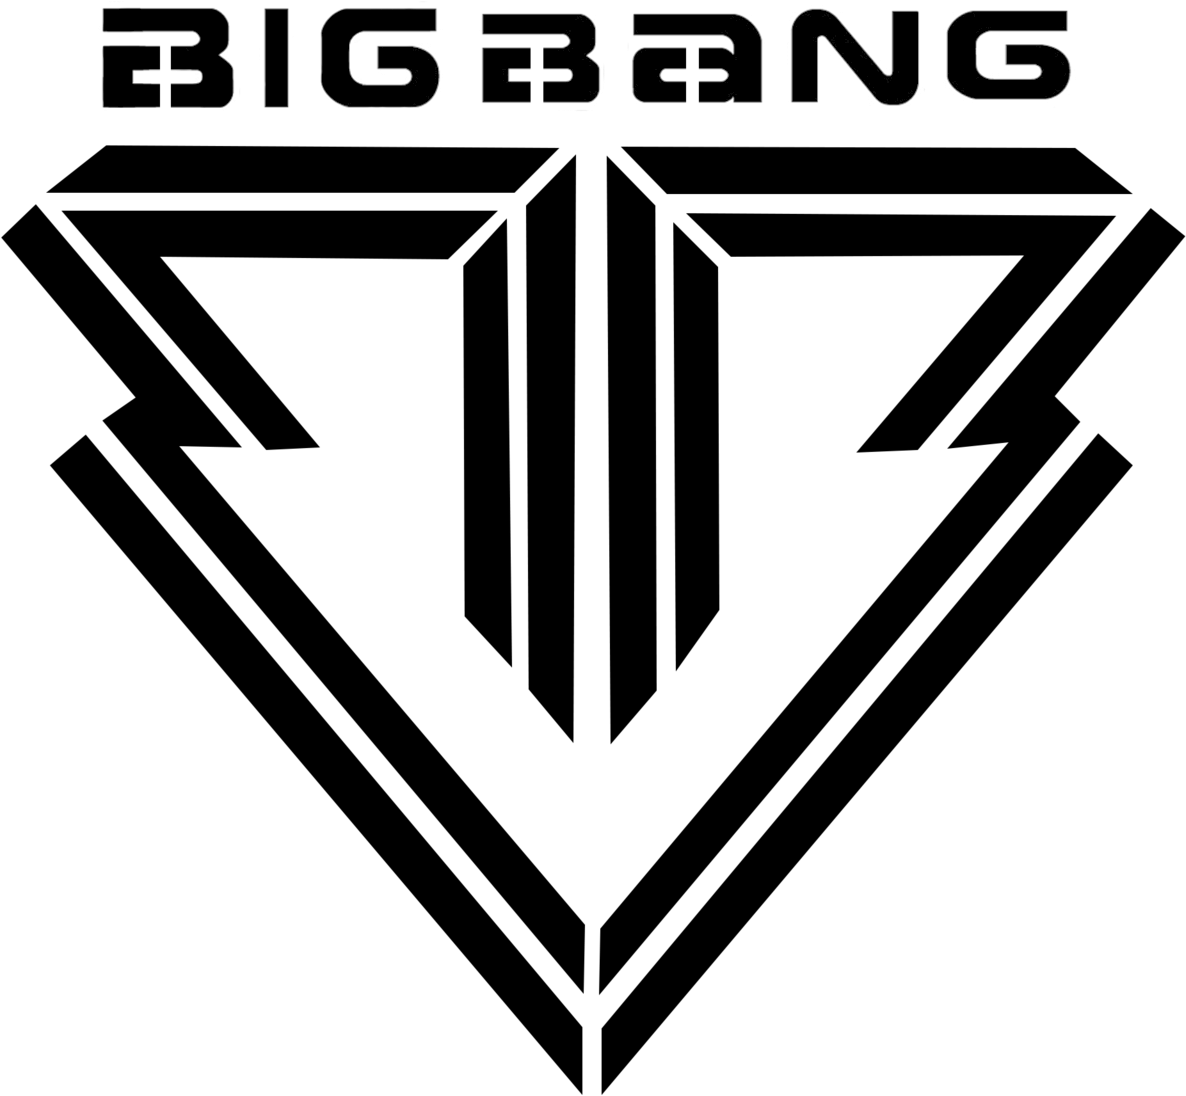 BIGBANG PNG Image Background